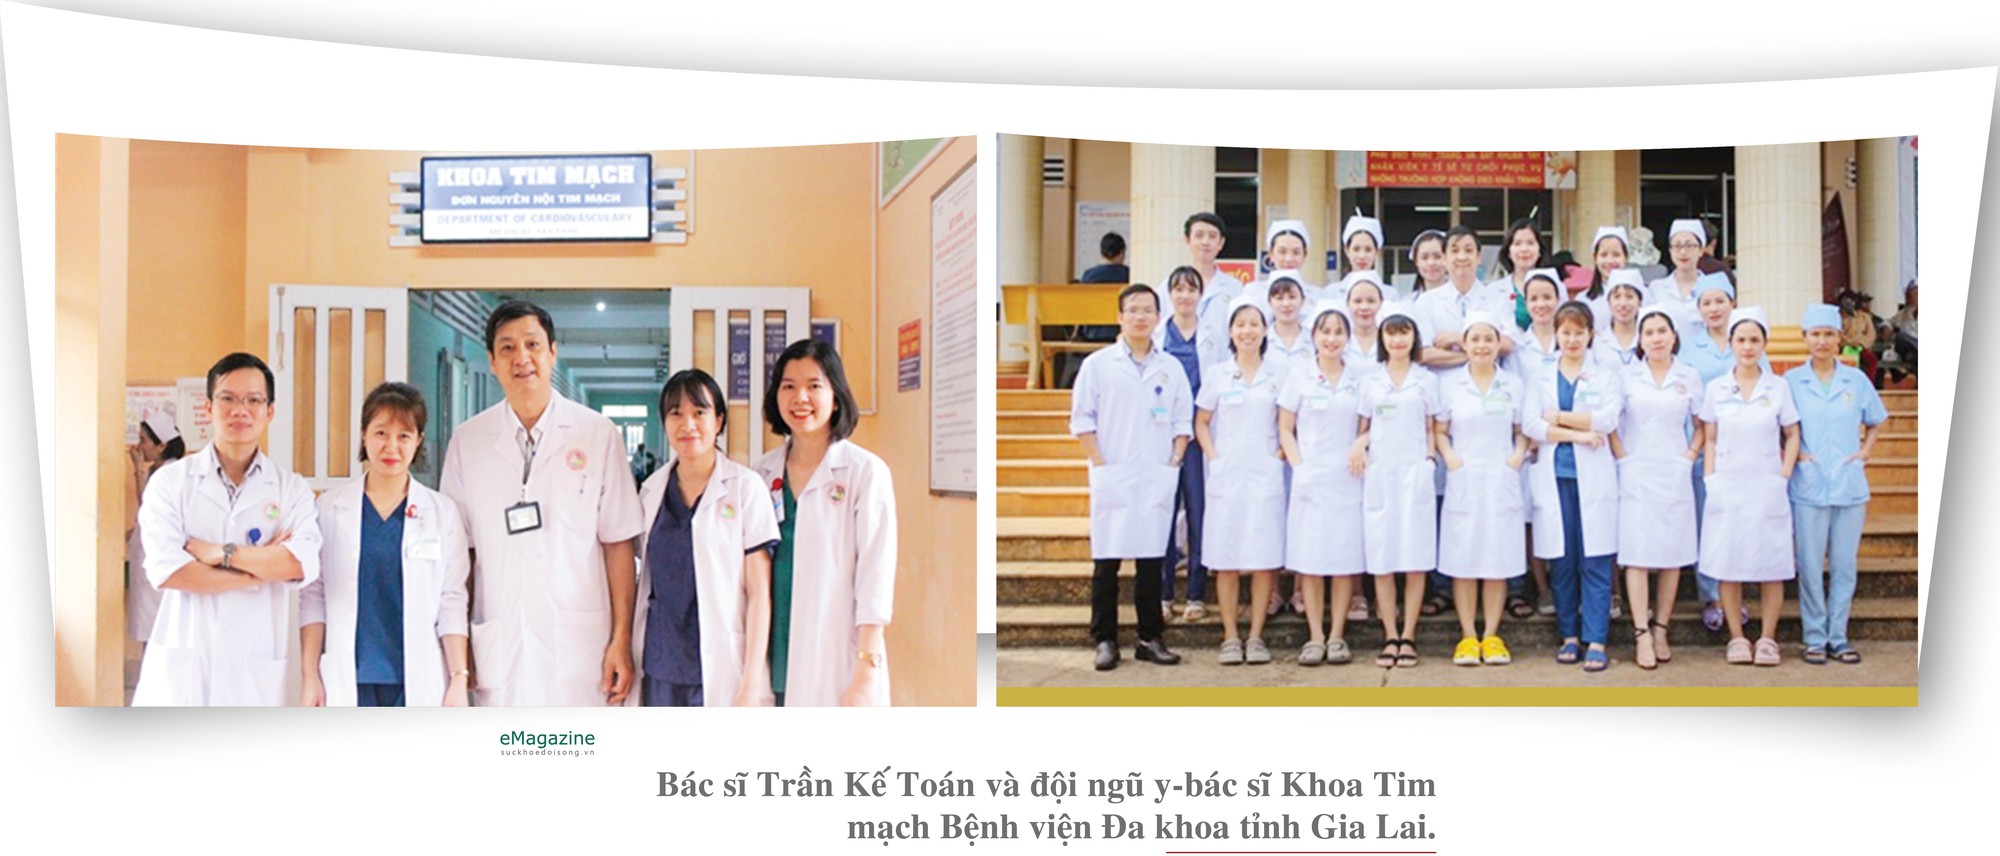 Bác sĩ Trần Kế Toán: Vững chuyên môn, giàu y đức- Ảnh 7.